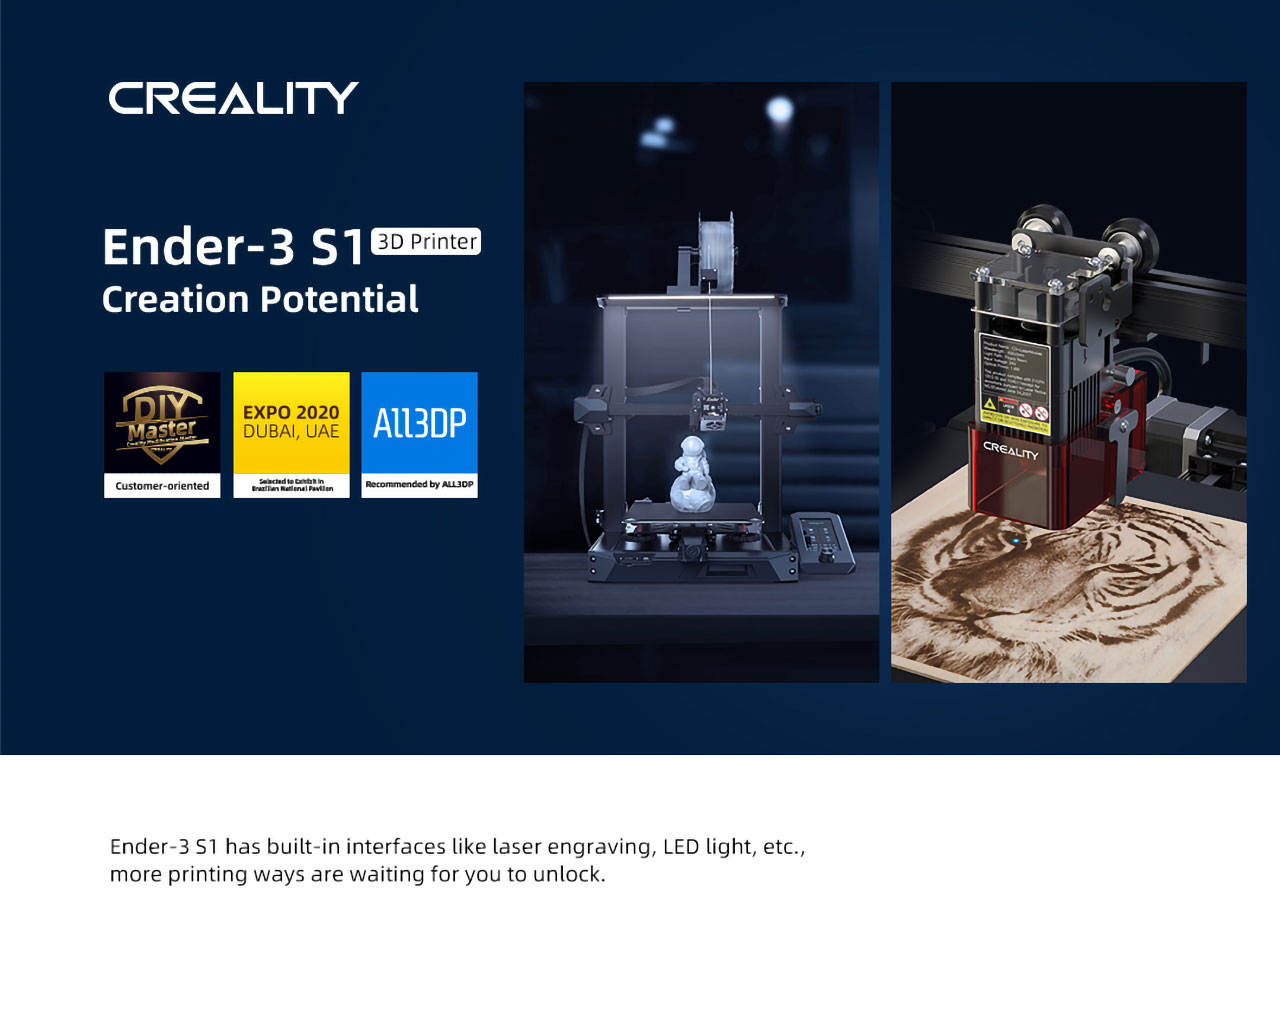 İnanç Can Çekmez: Uygun Fiyata Yüksek Kaliteli 3D Yazıcı: Creality Ender-3 S1 9